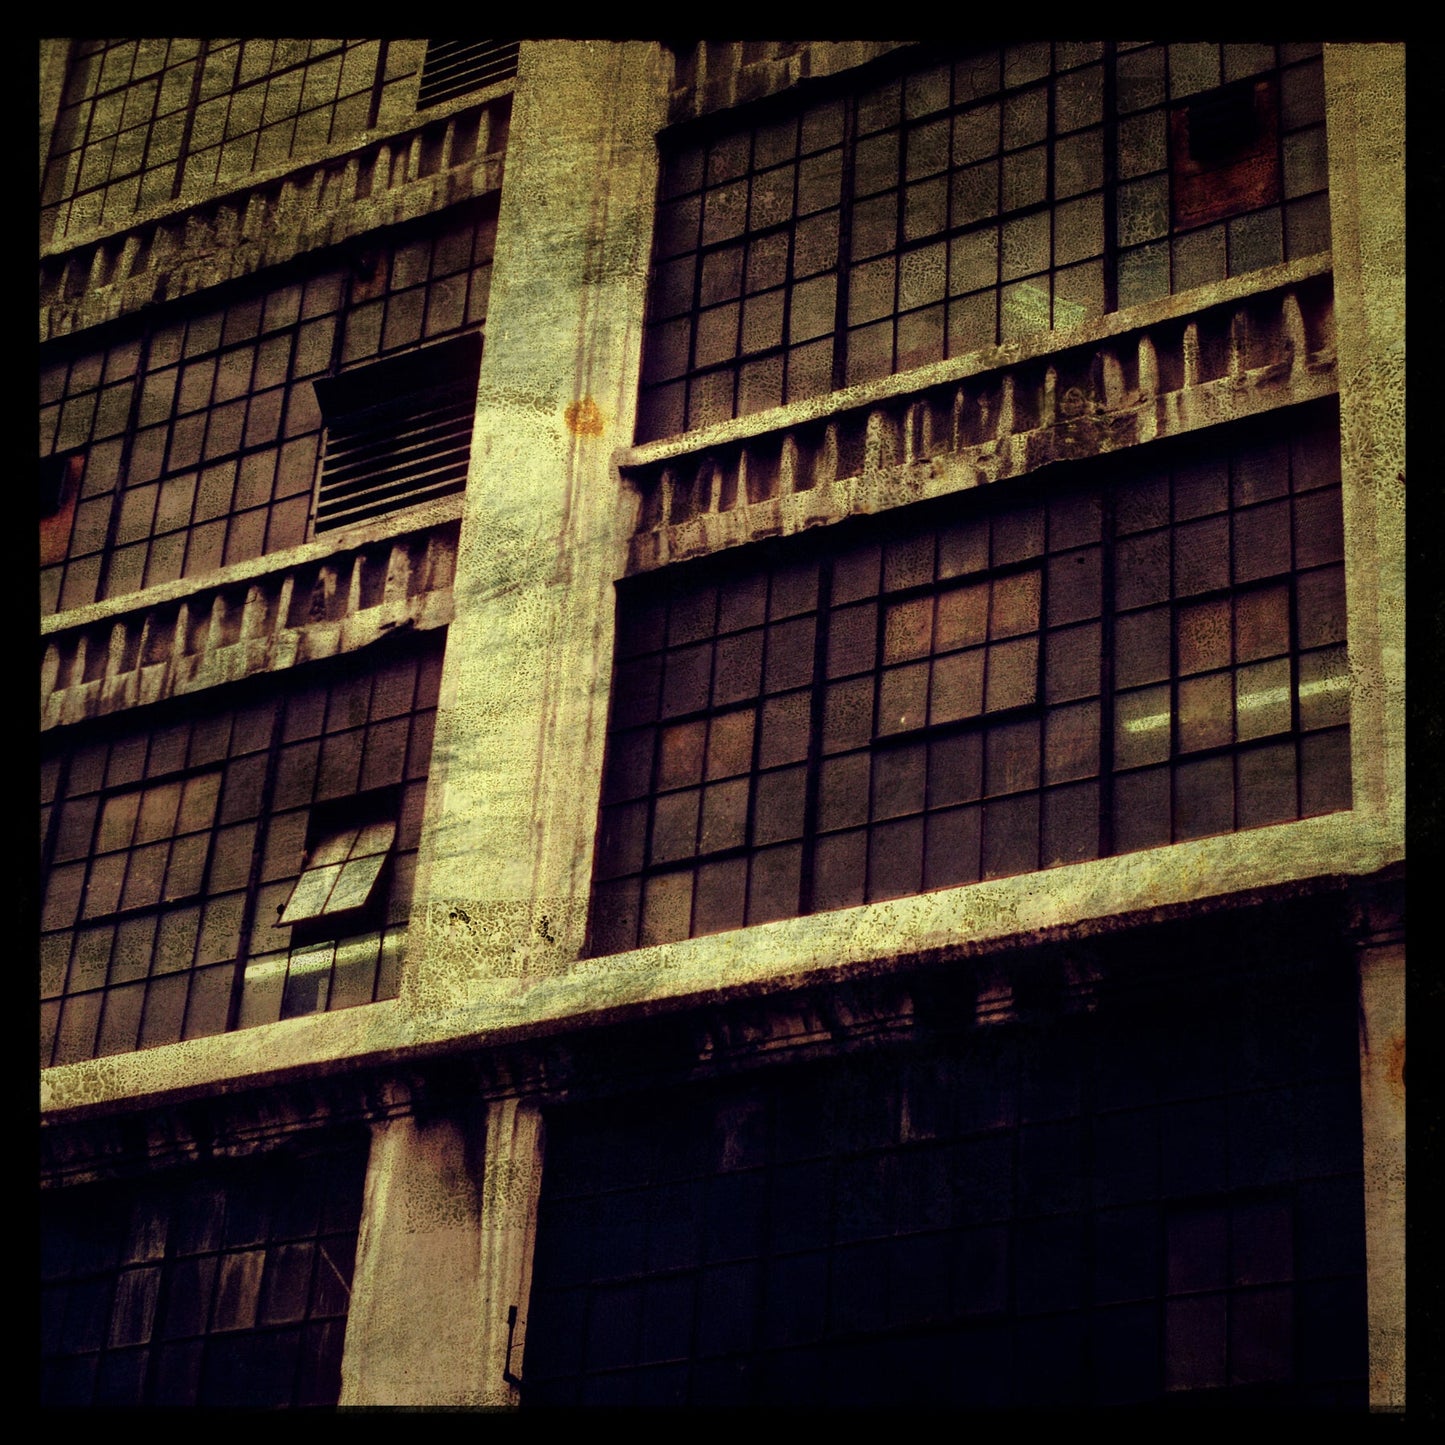 NY Windows No. 3 Photograph